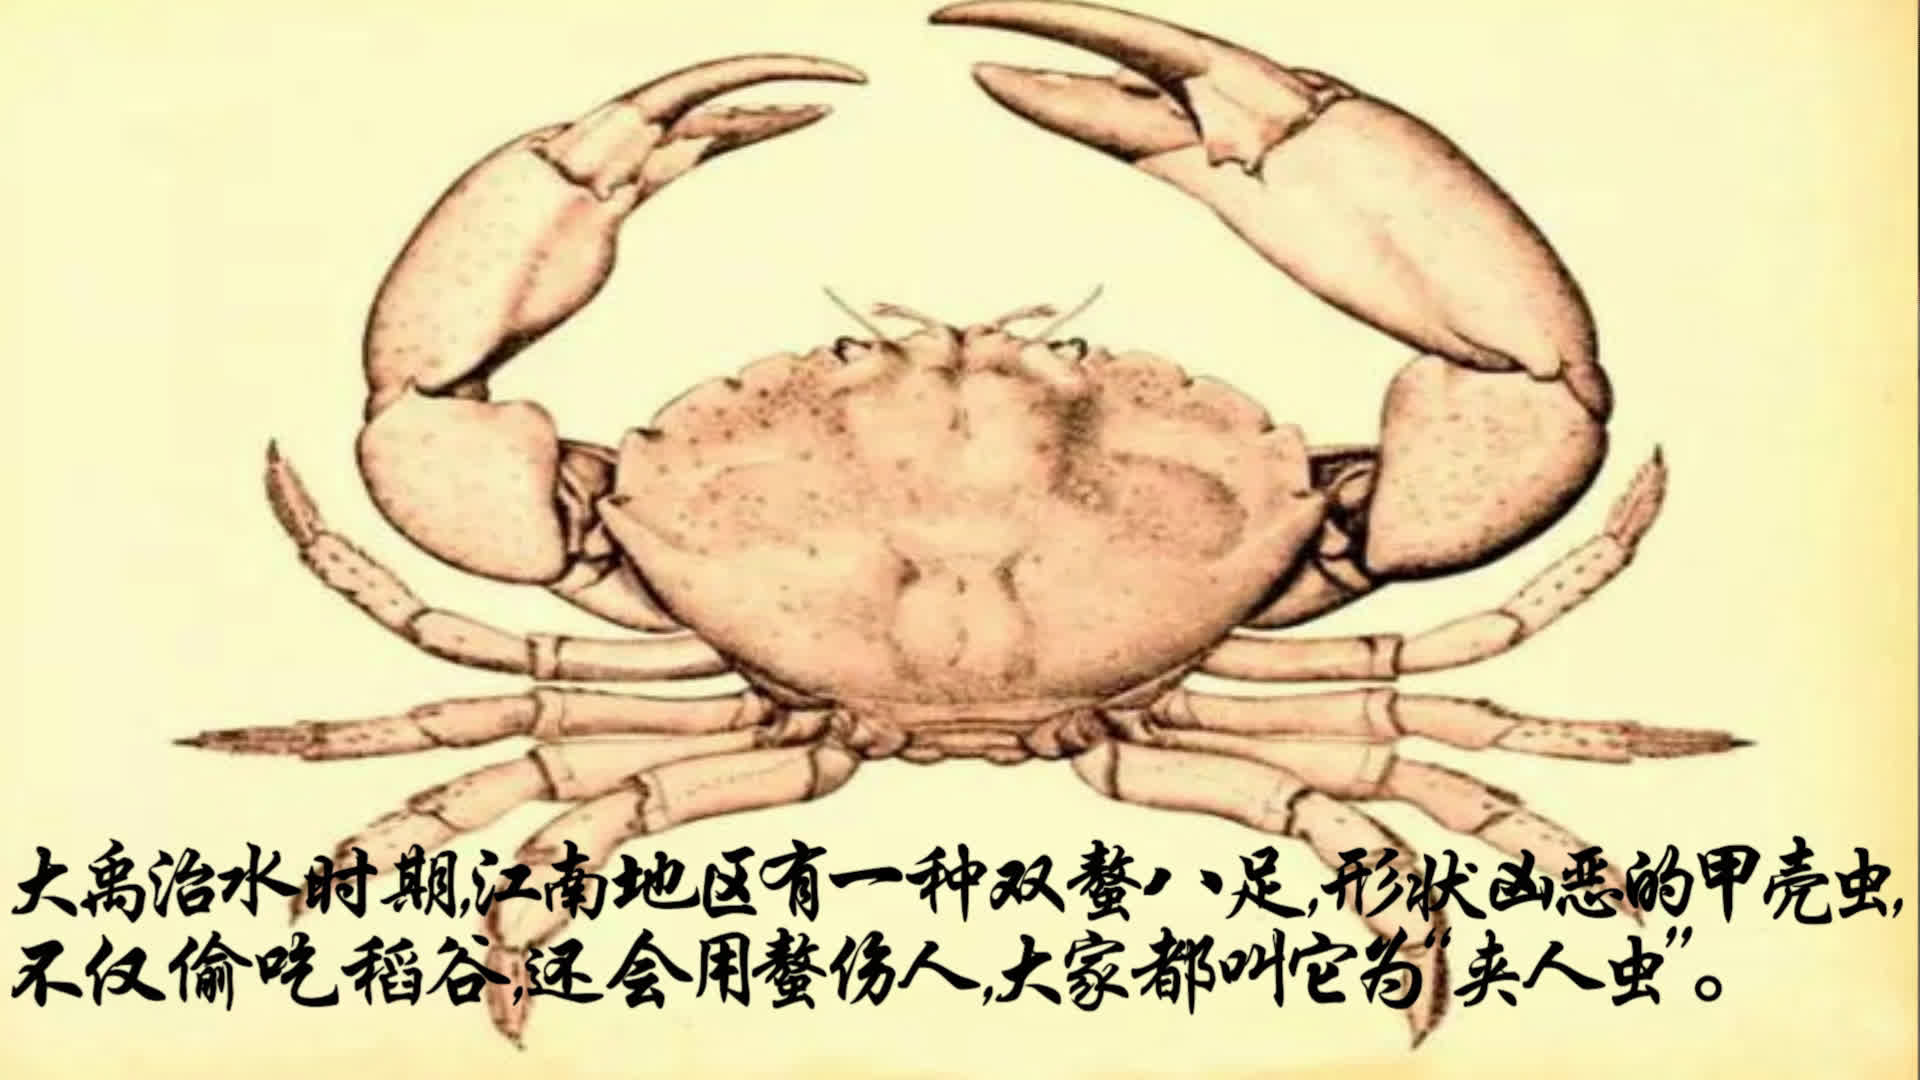 “第一个吃螃蟹的人”是什么意思？